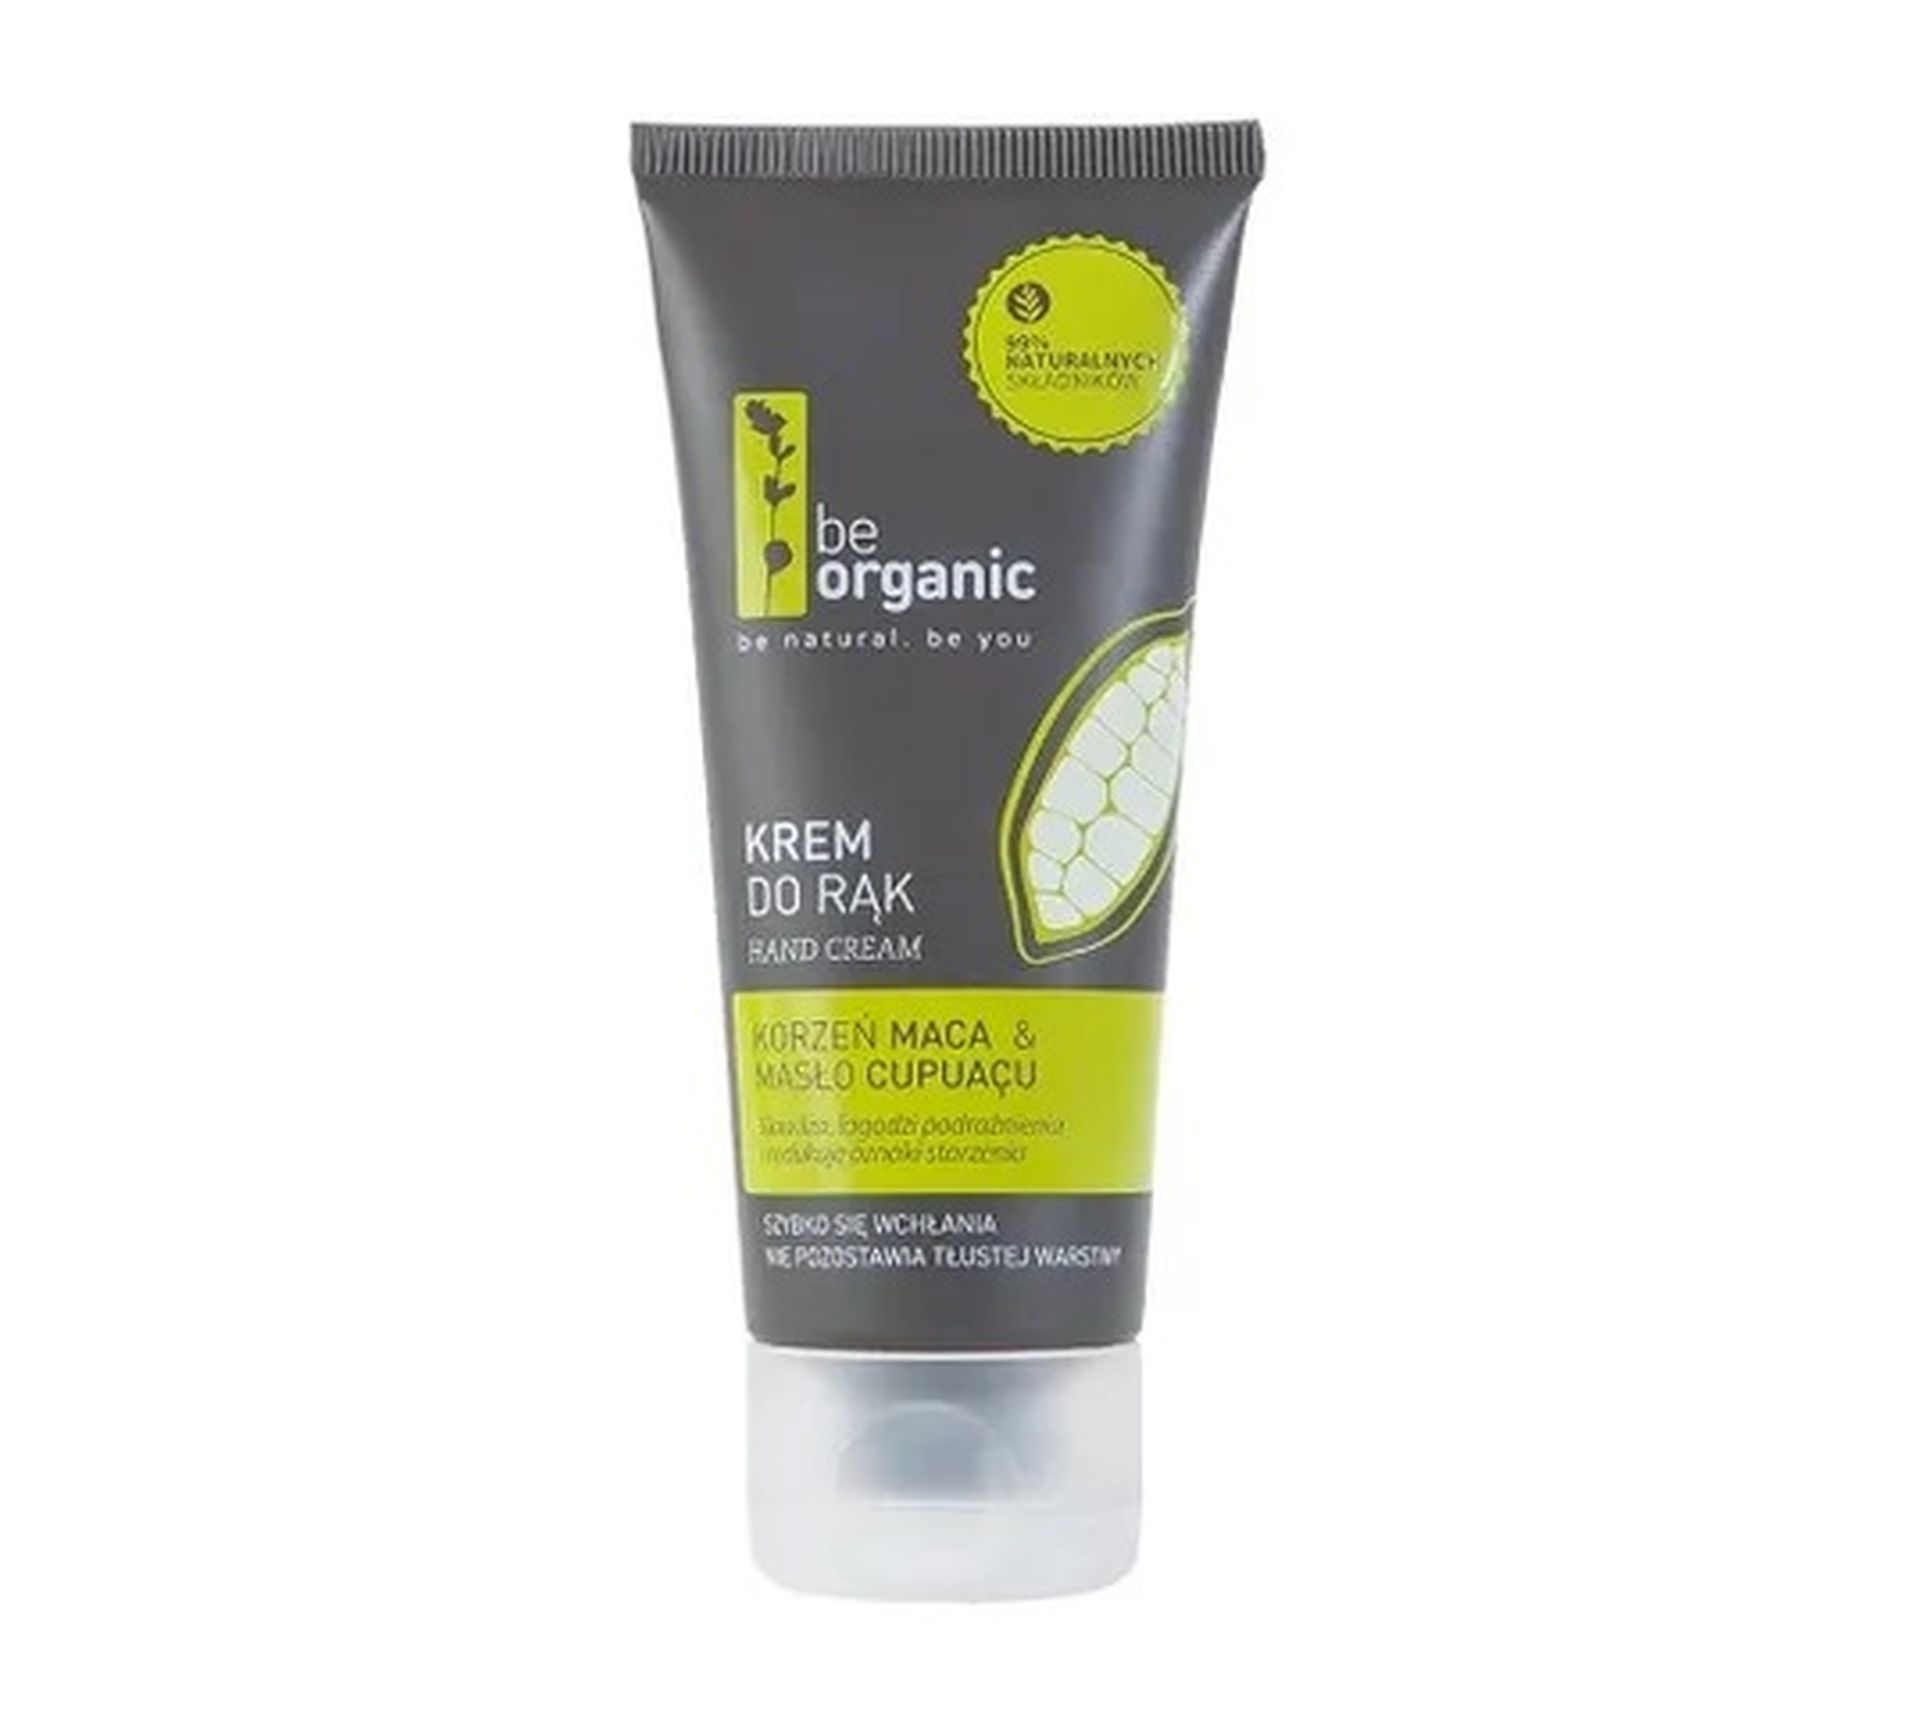 Be Organic Hand Cream krem do rąk Korzeń Maca & Masło Cupuacu (50 ml)